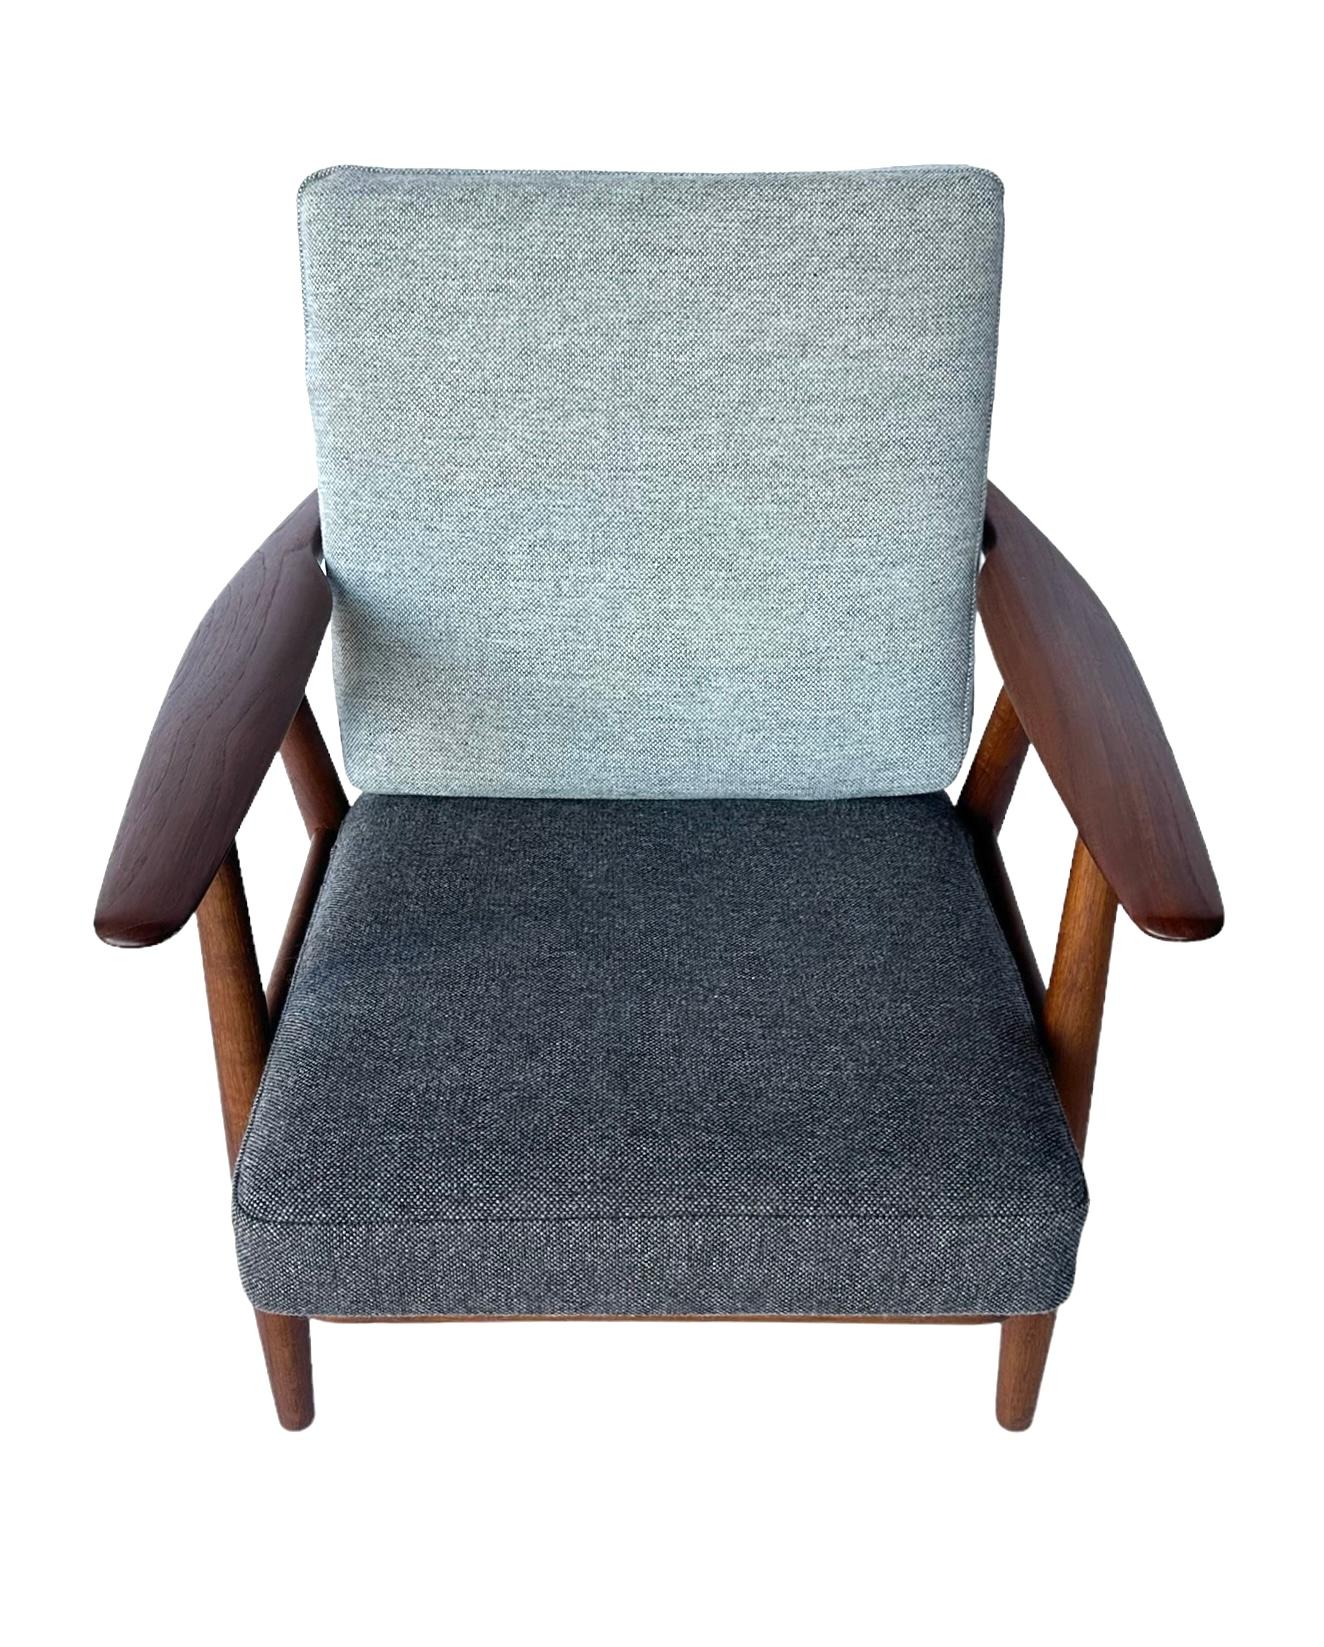 Scandinavian Modern Hans J. Wegner Cigar Lounge Chair in Teak with New Maharam Upholstery For Sale